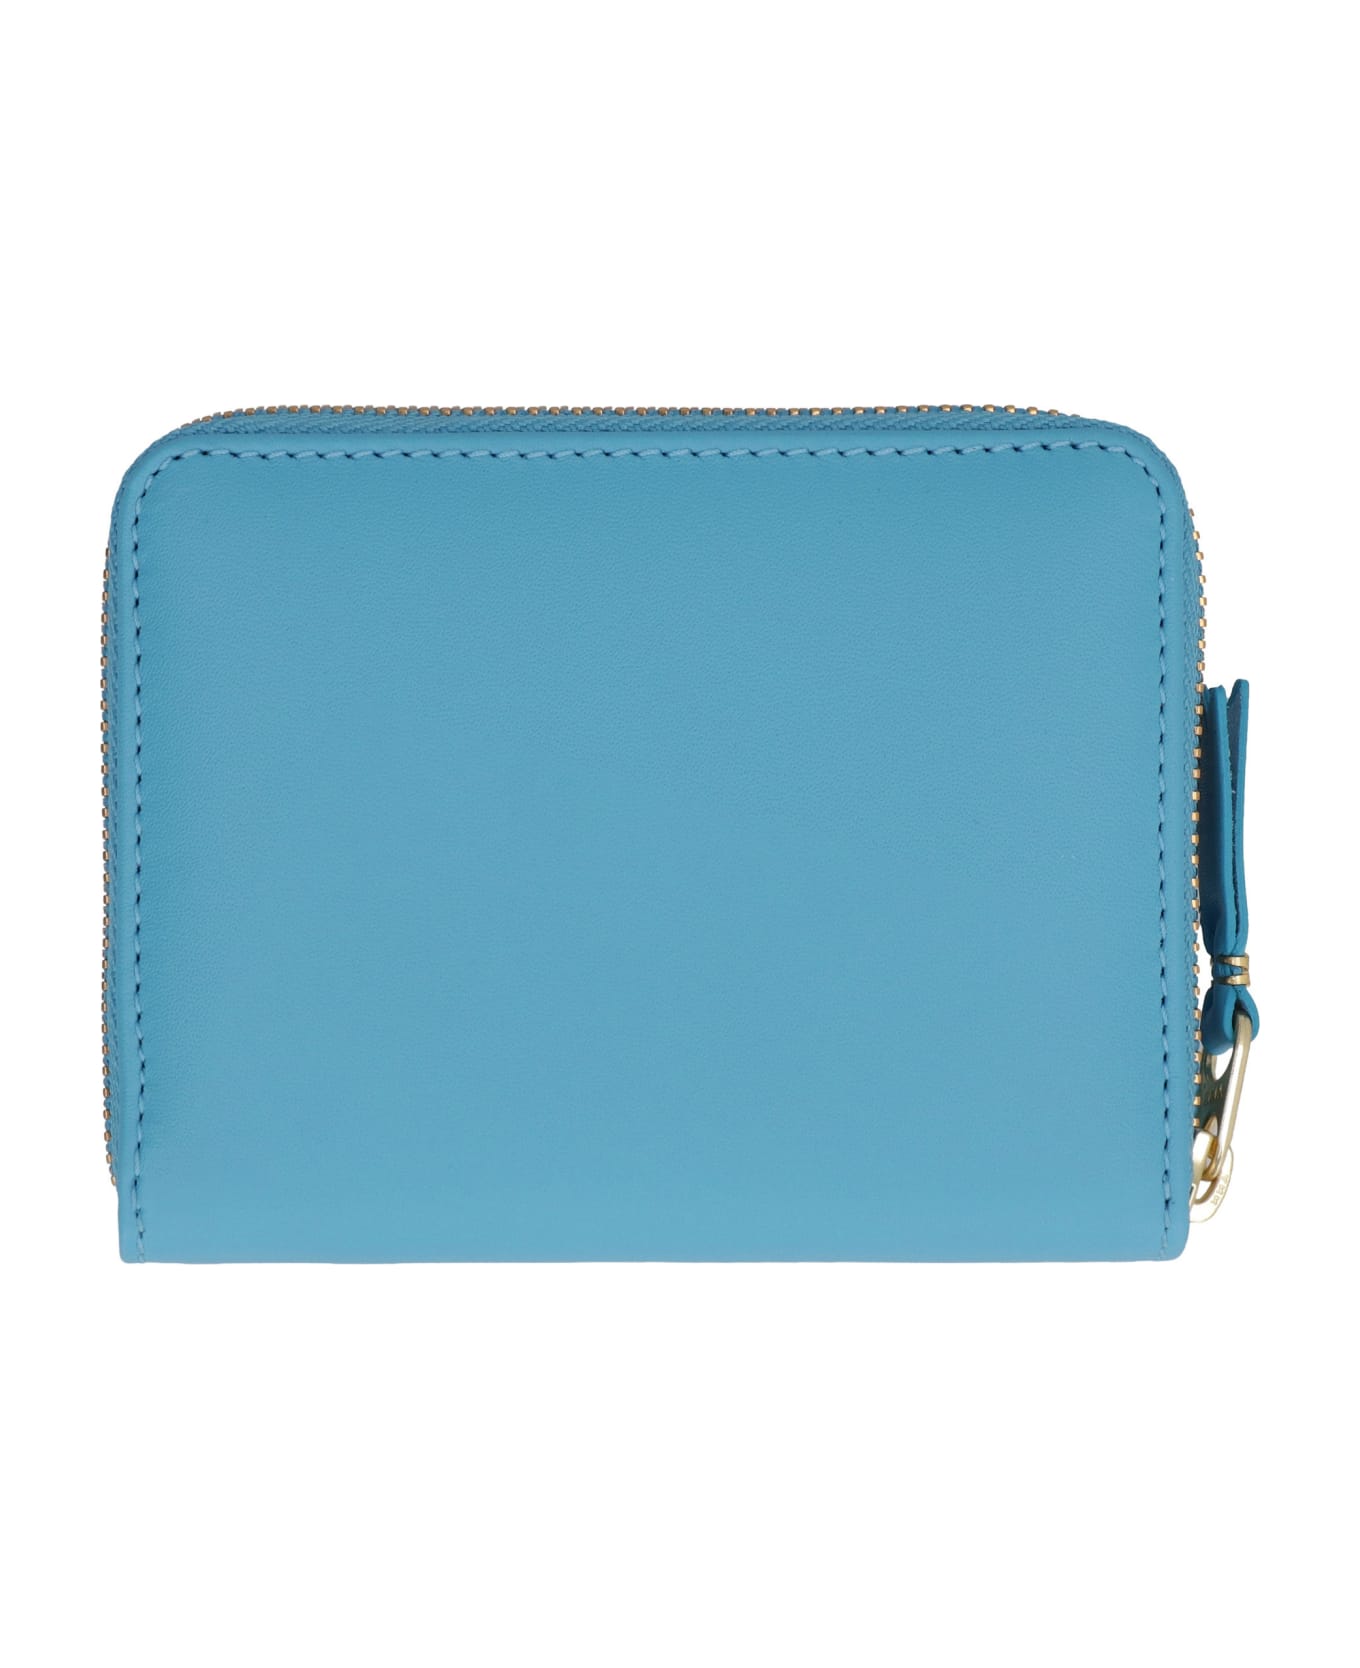 Comme des Garçons Wallet Leather Zip Around Wallet - Light Blue 財布